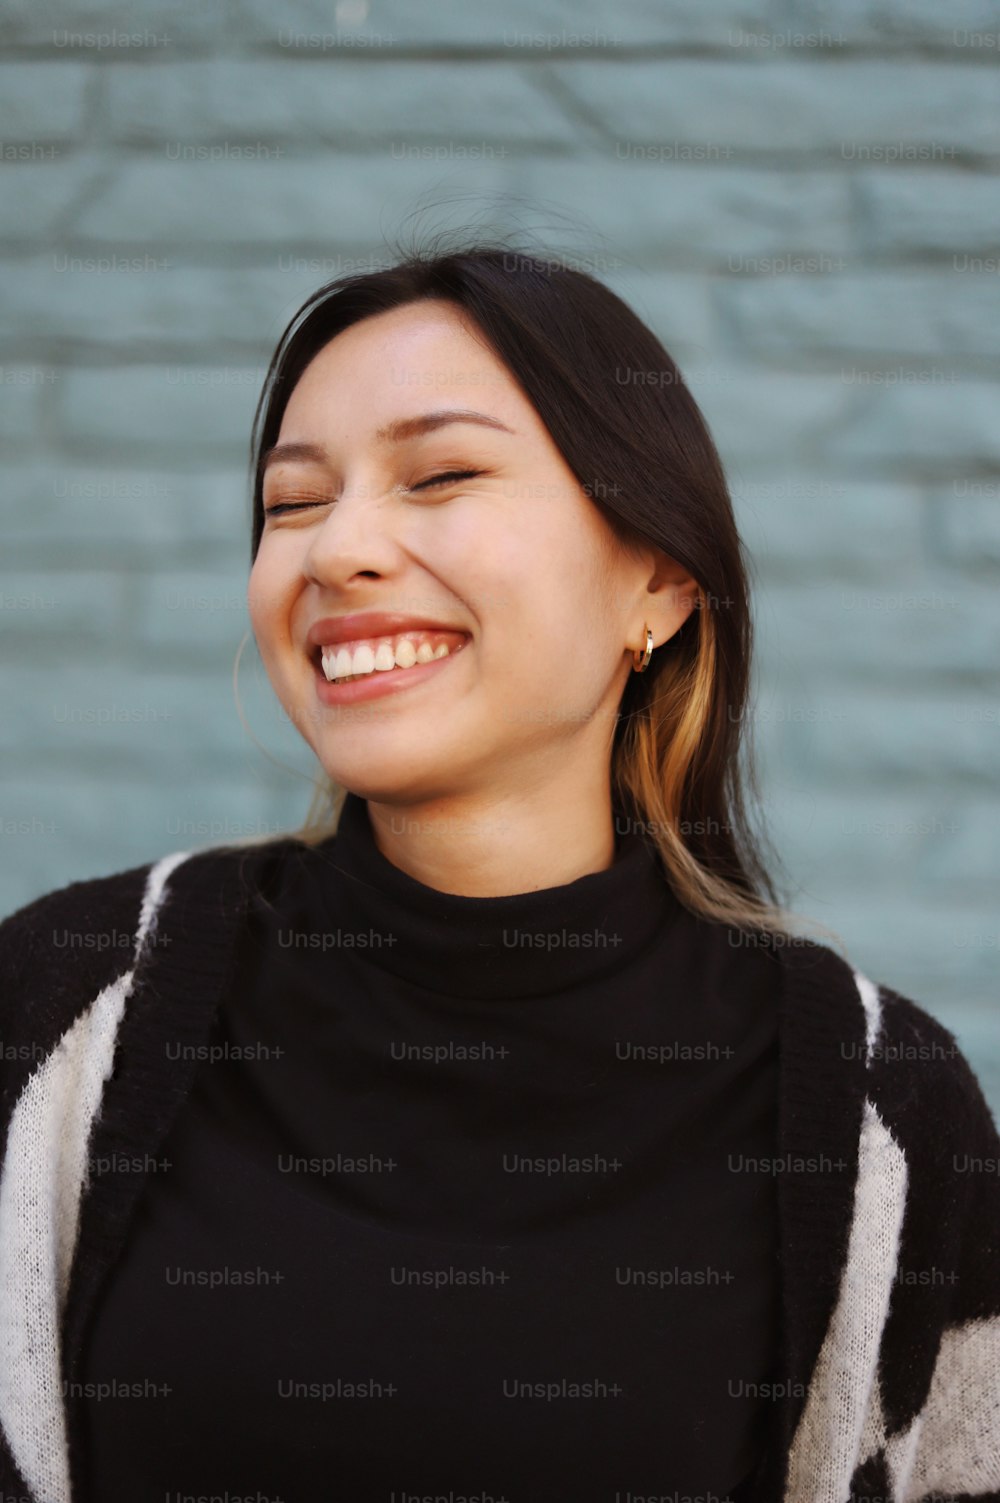 una donna che sorride e indossa un maglione bianco e nero